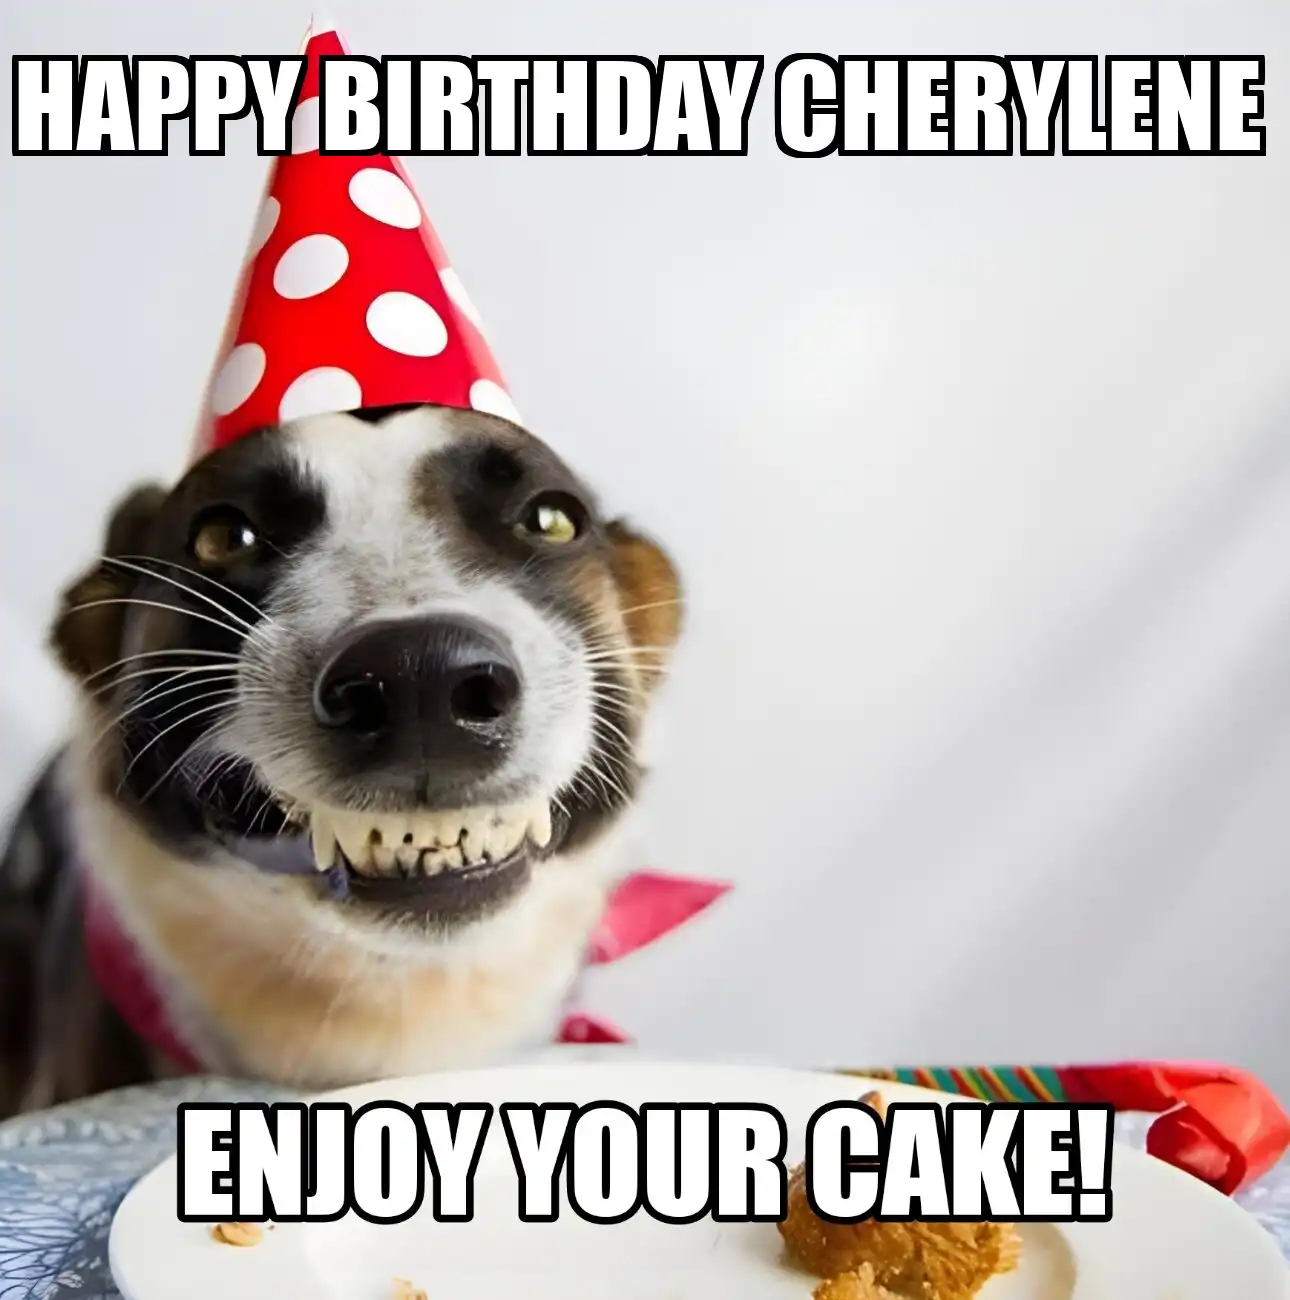 Happy Birthday Cherylene Enjoy Your Cake Dog Meme